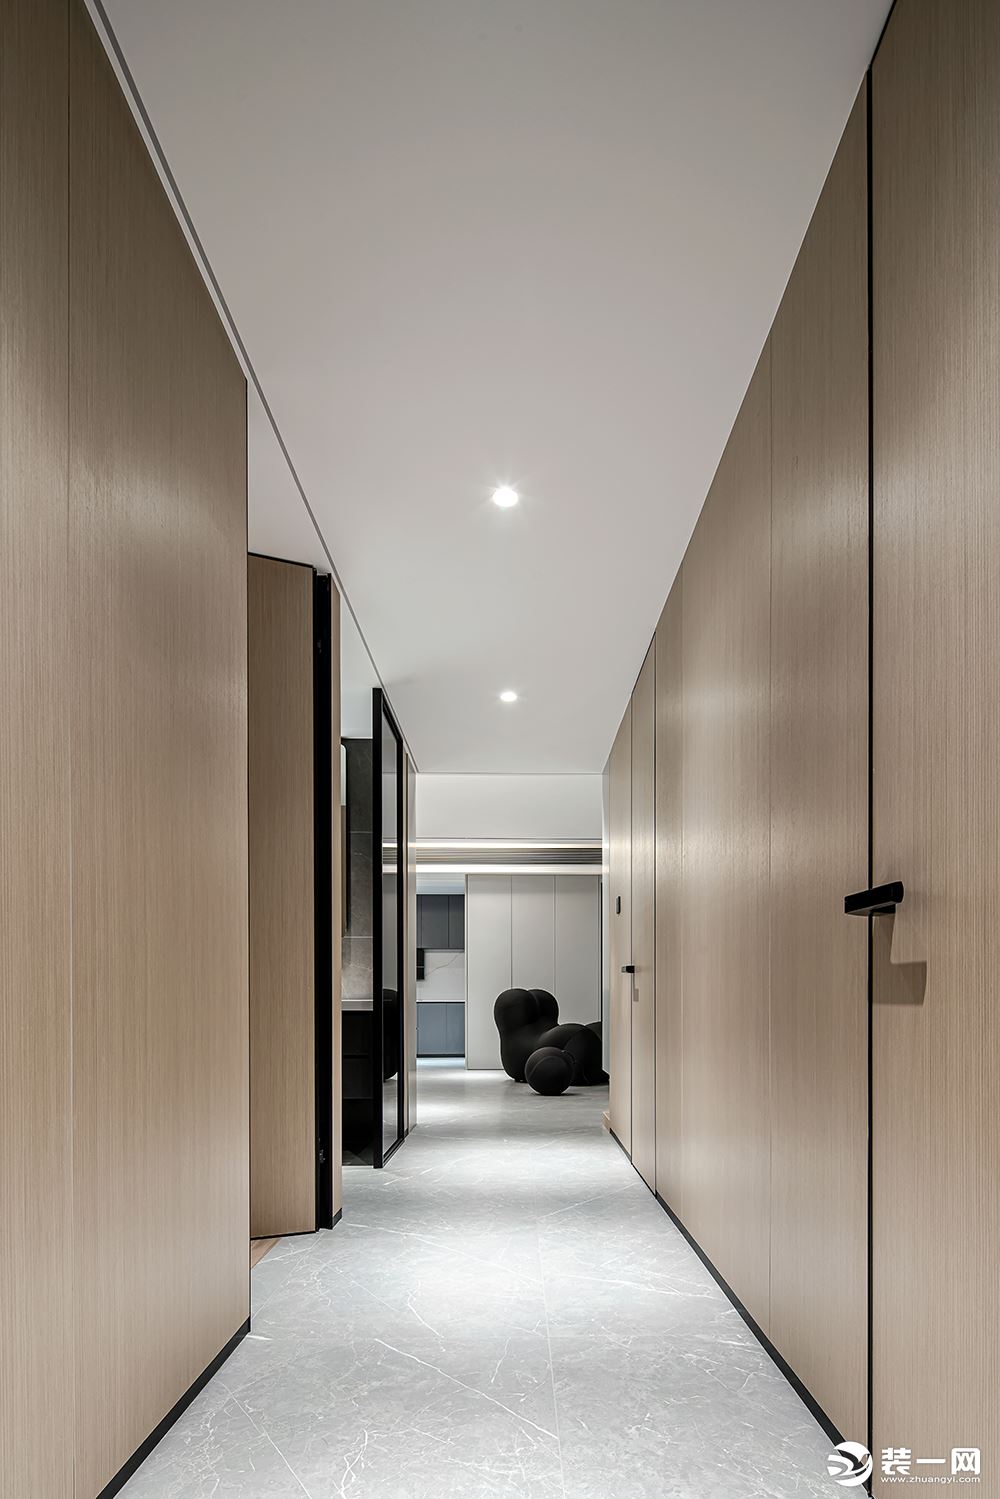 在通道延伸至房间采用原木材质及免漆板进入，让空间在酷炫的基础上增加家庭温度。